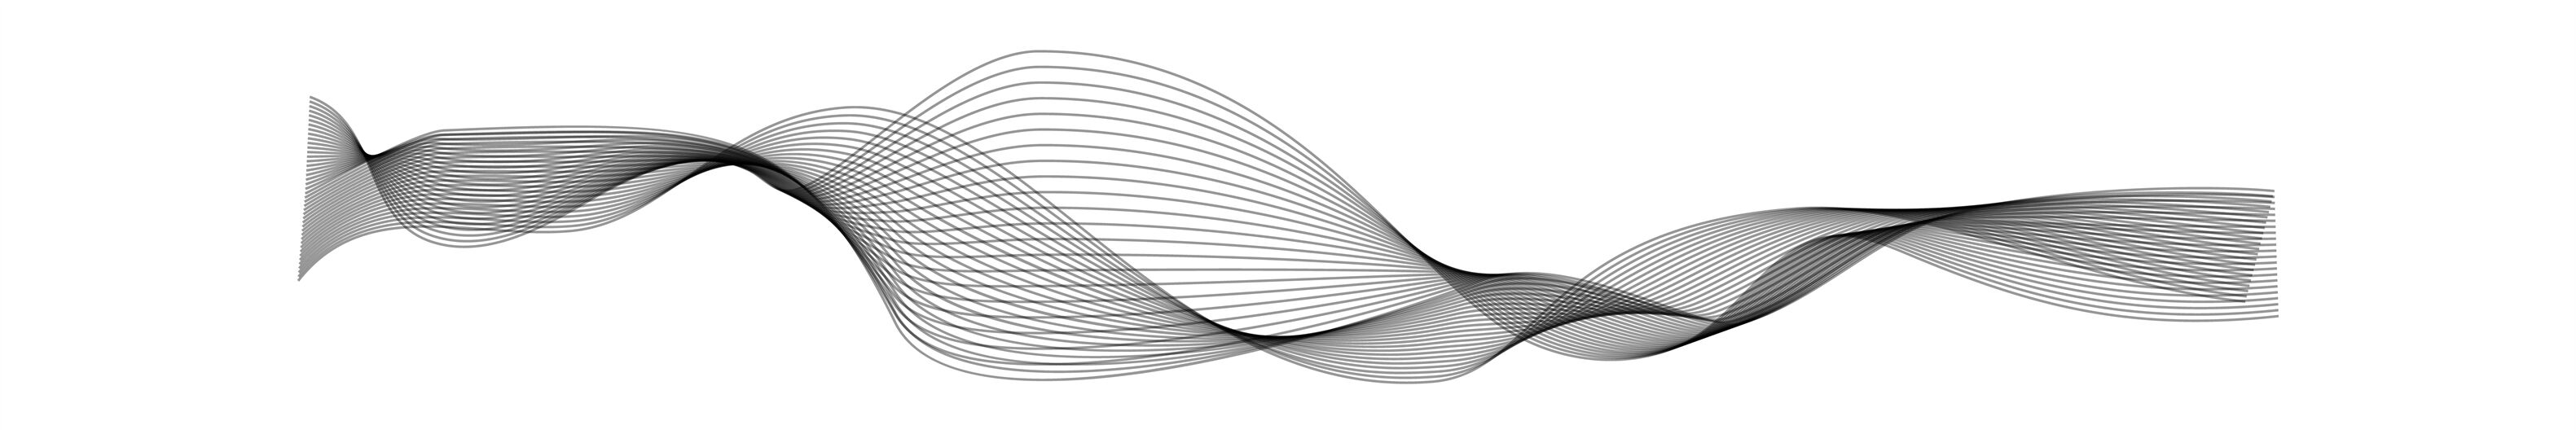 Soundwave design. Black curve sonic musical or radio line vector wave ...